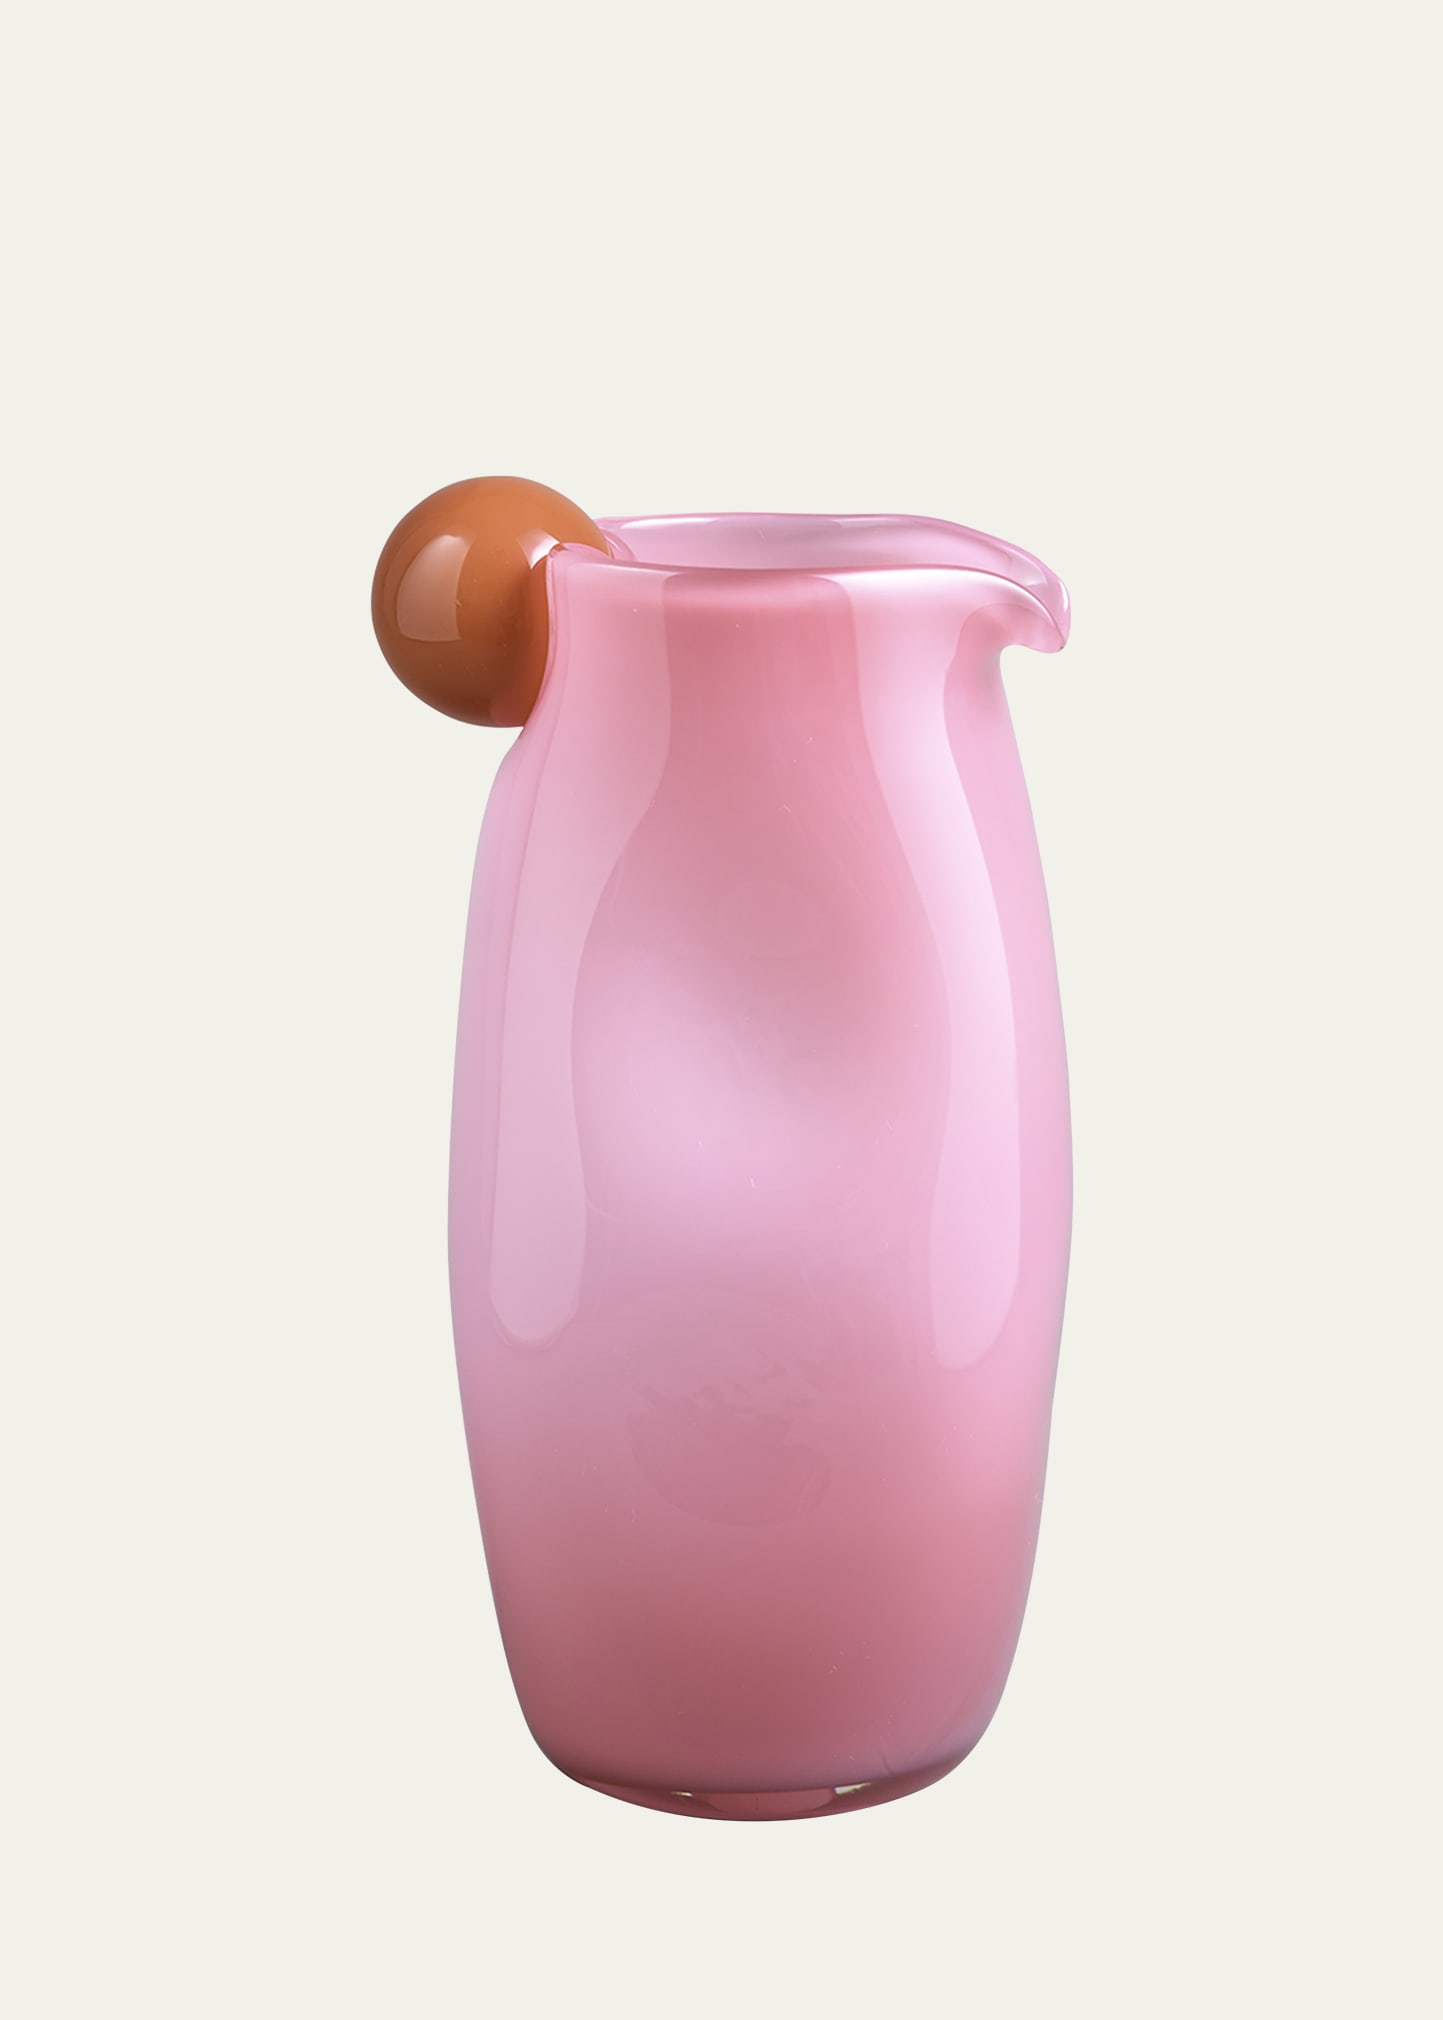 Helle Mardahl Glass Jug W/ A Twist In Pink